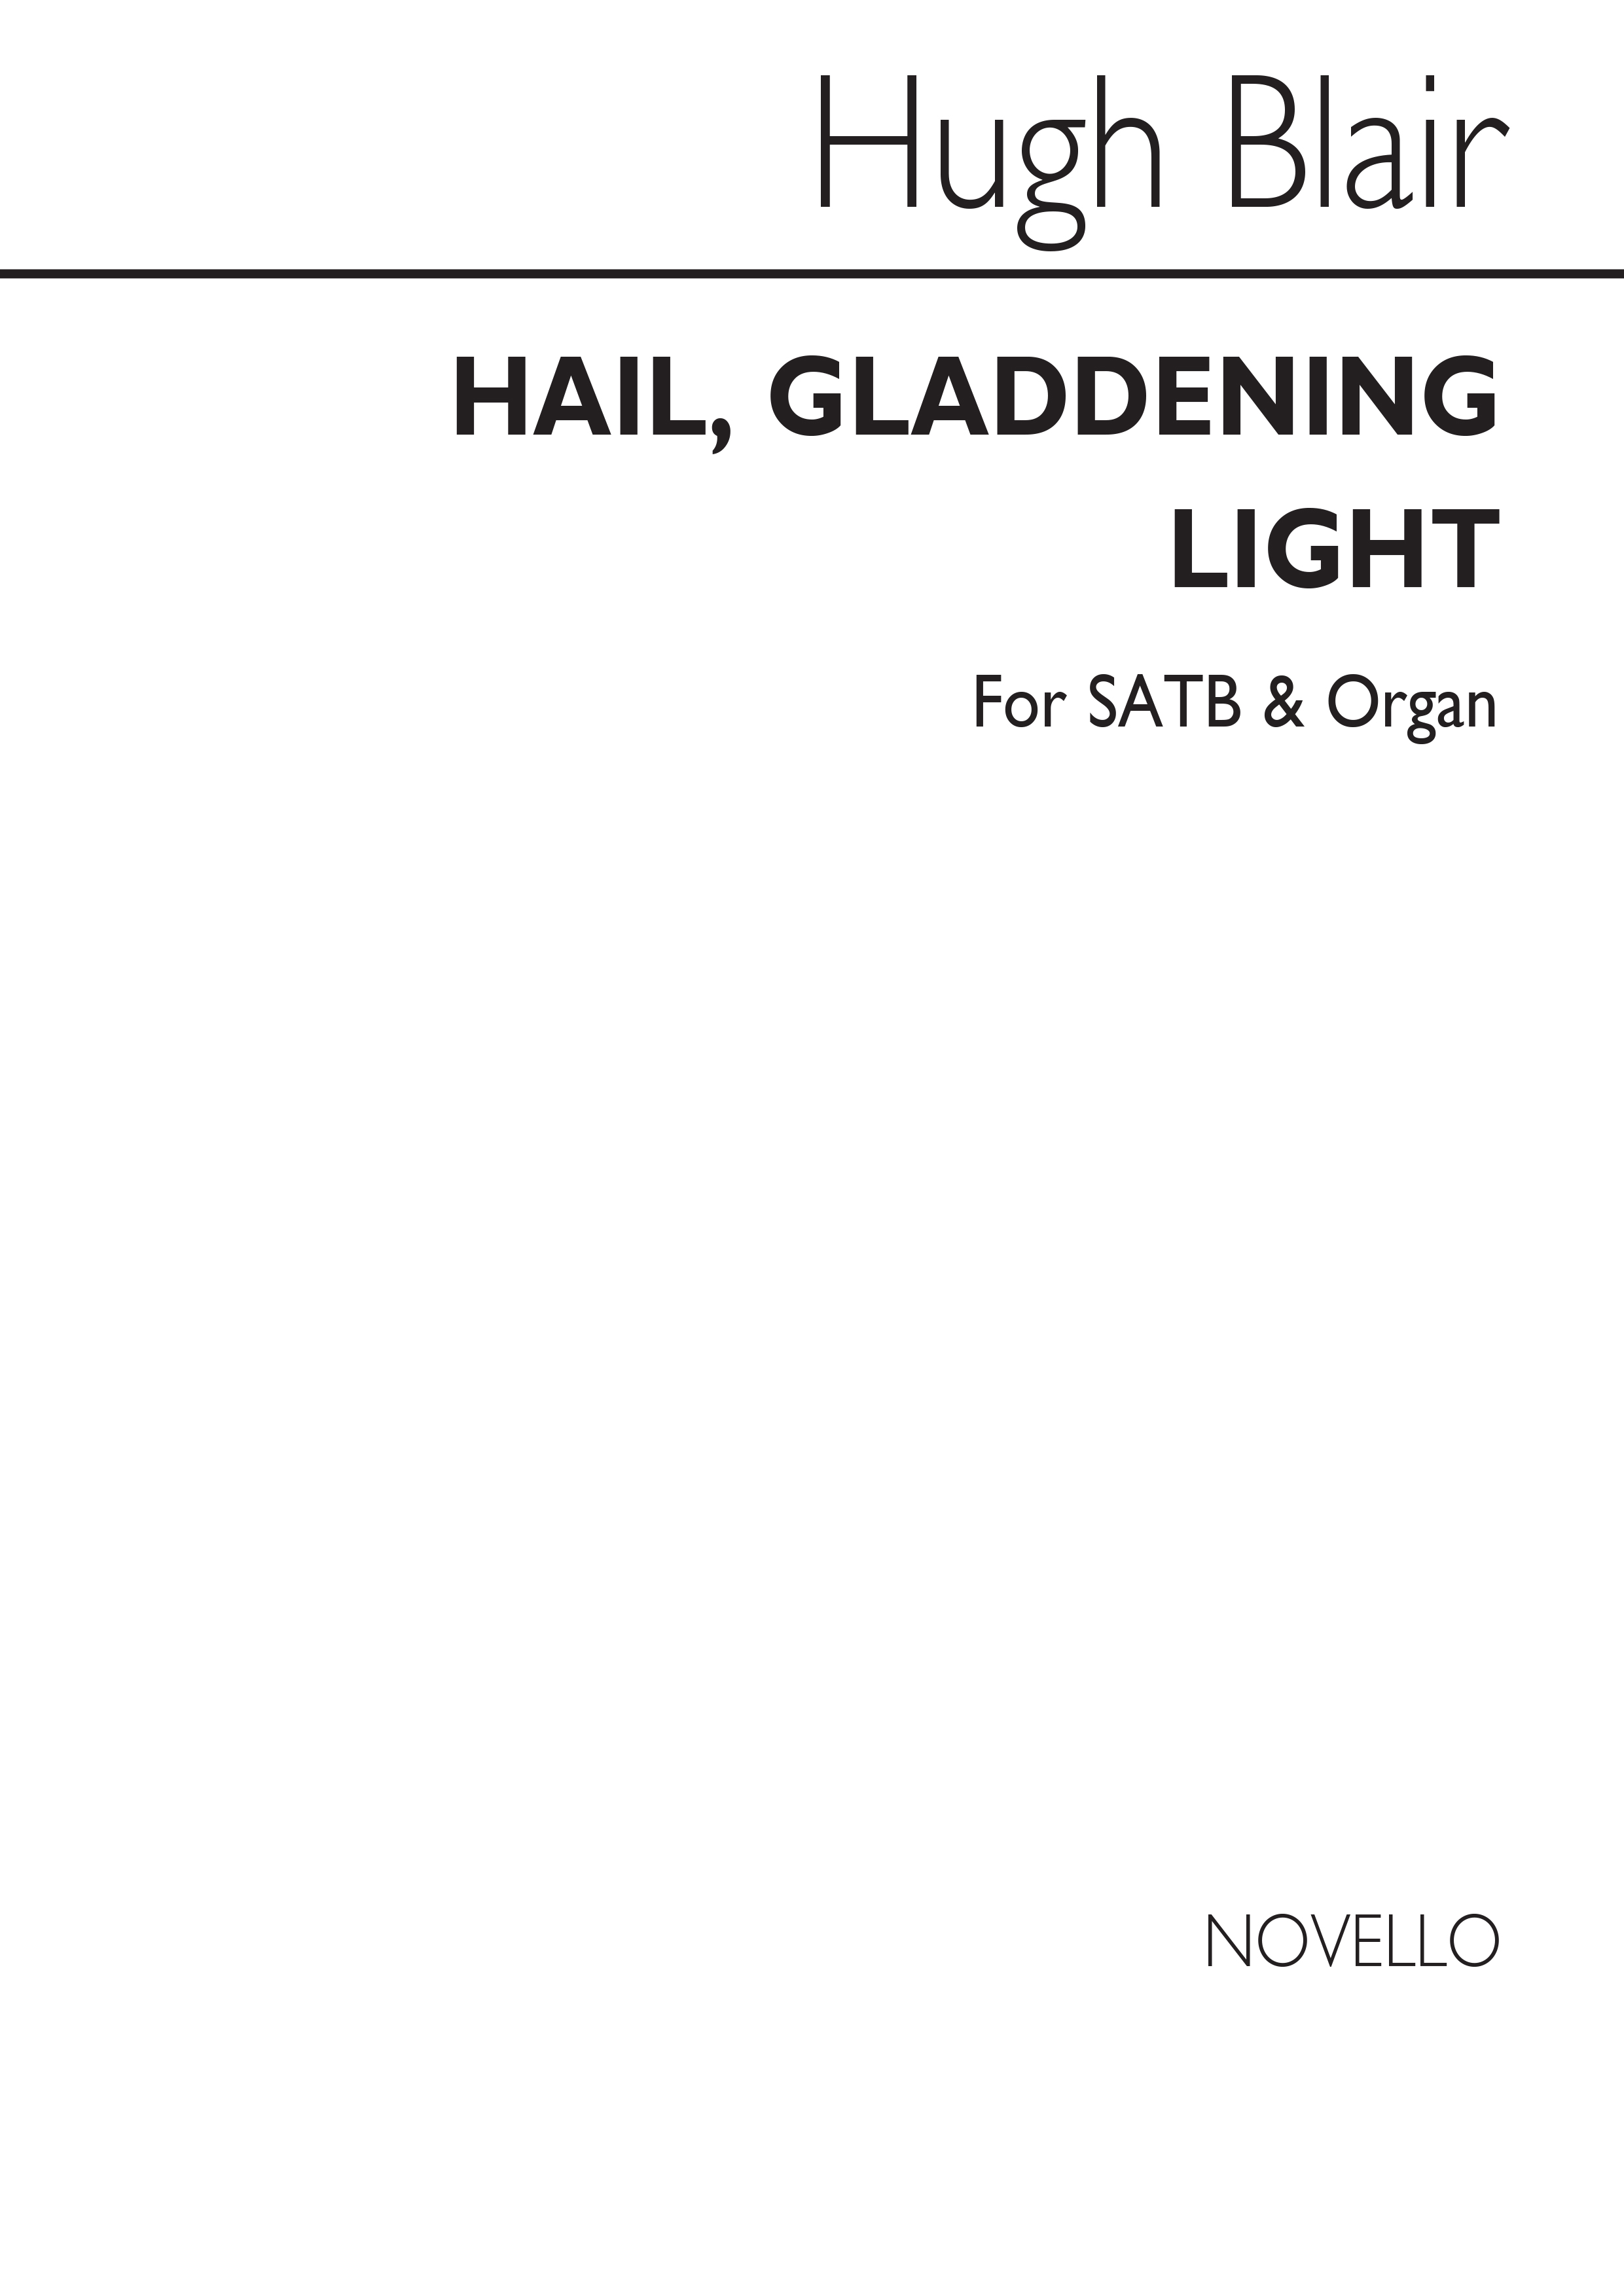 Hugh Blair: Hail, Gladdening Light